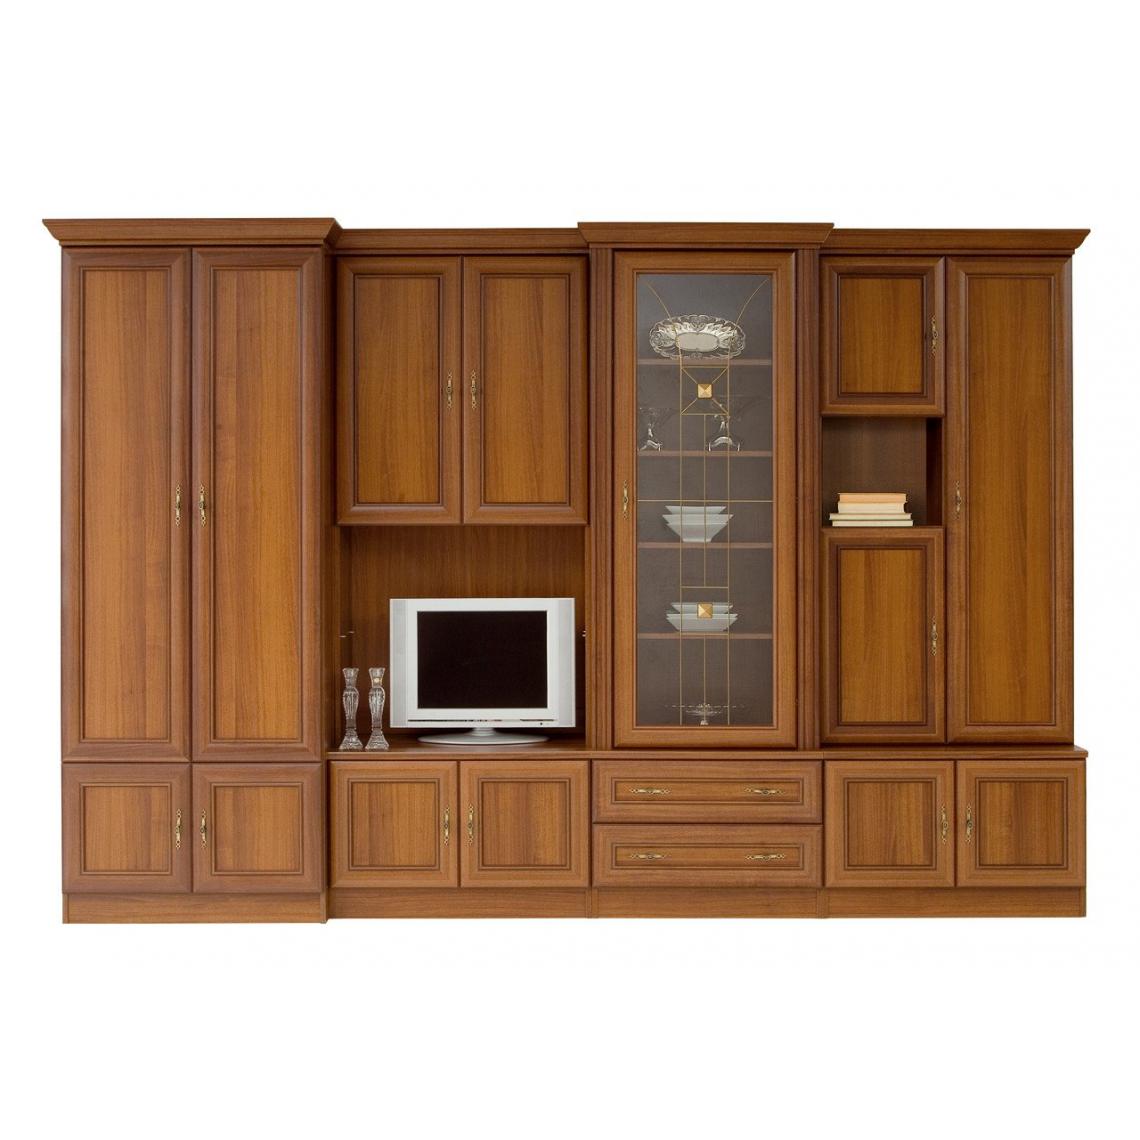 Hucoco - MARYAM - L'ensemble de meubles salon Mur TV - Style classique - Grande capacité de rangement - Façades décoratives - Marron - Meubles TV, Hi-Fi